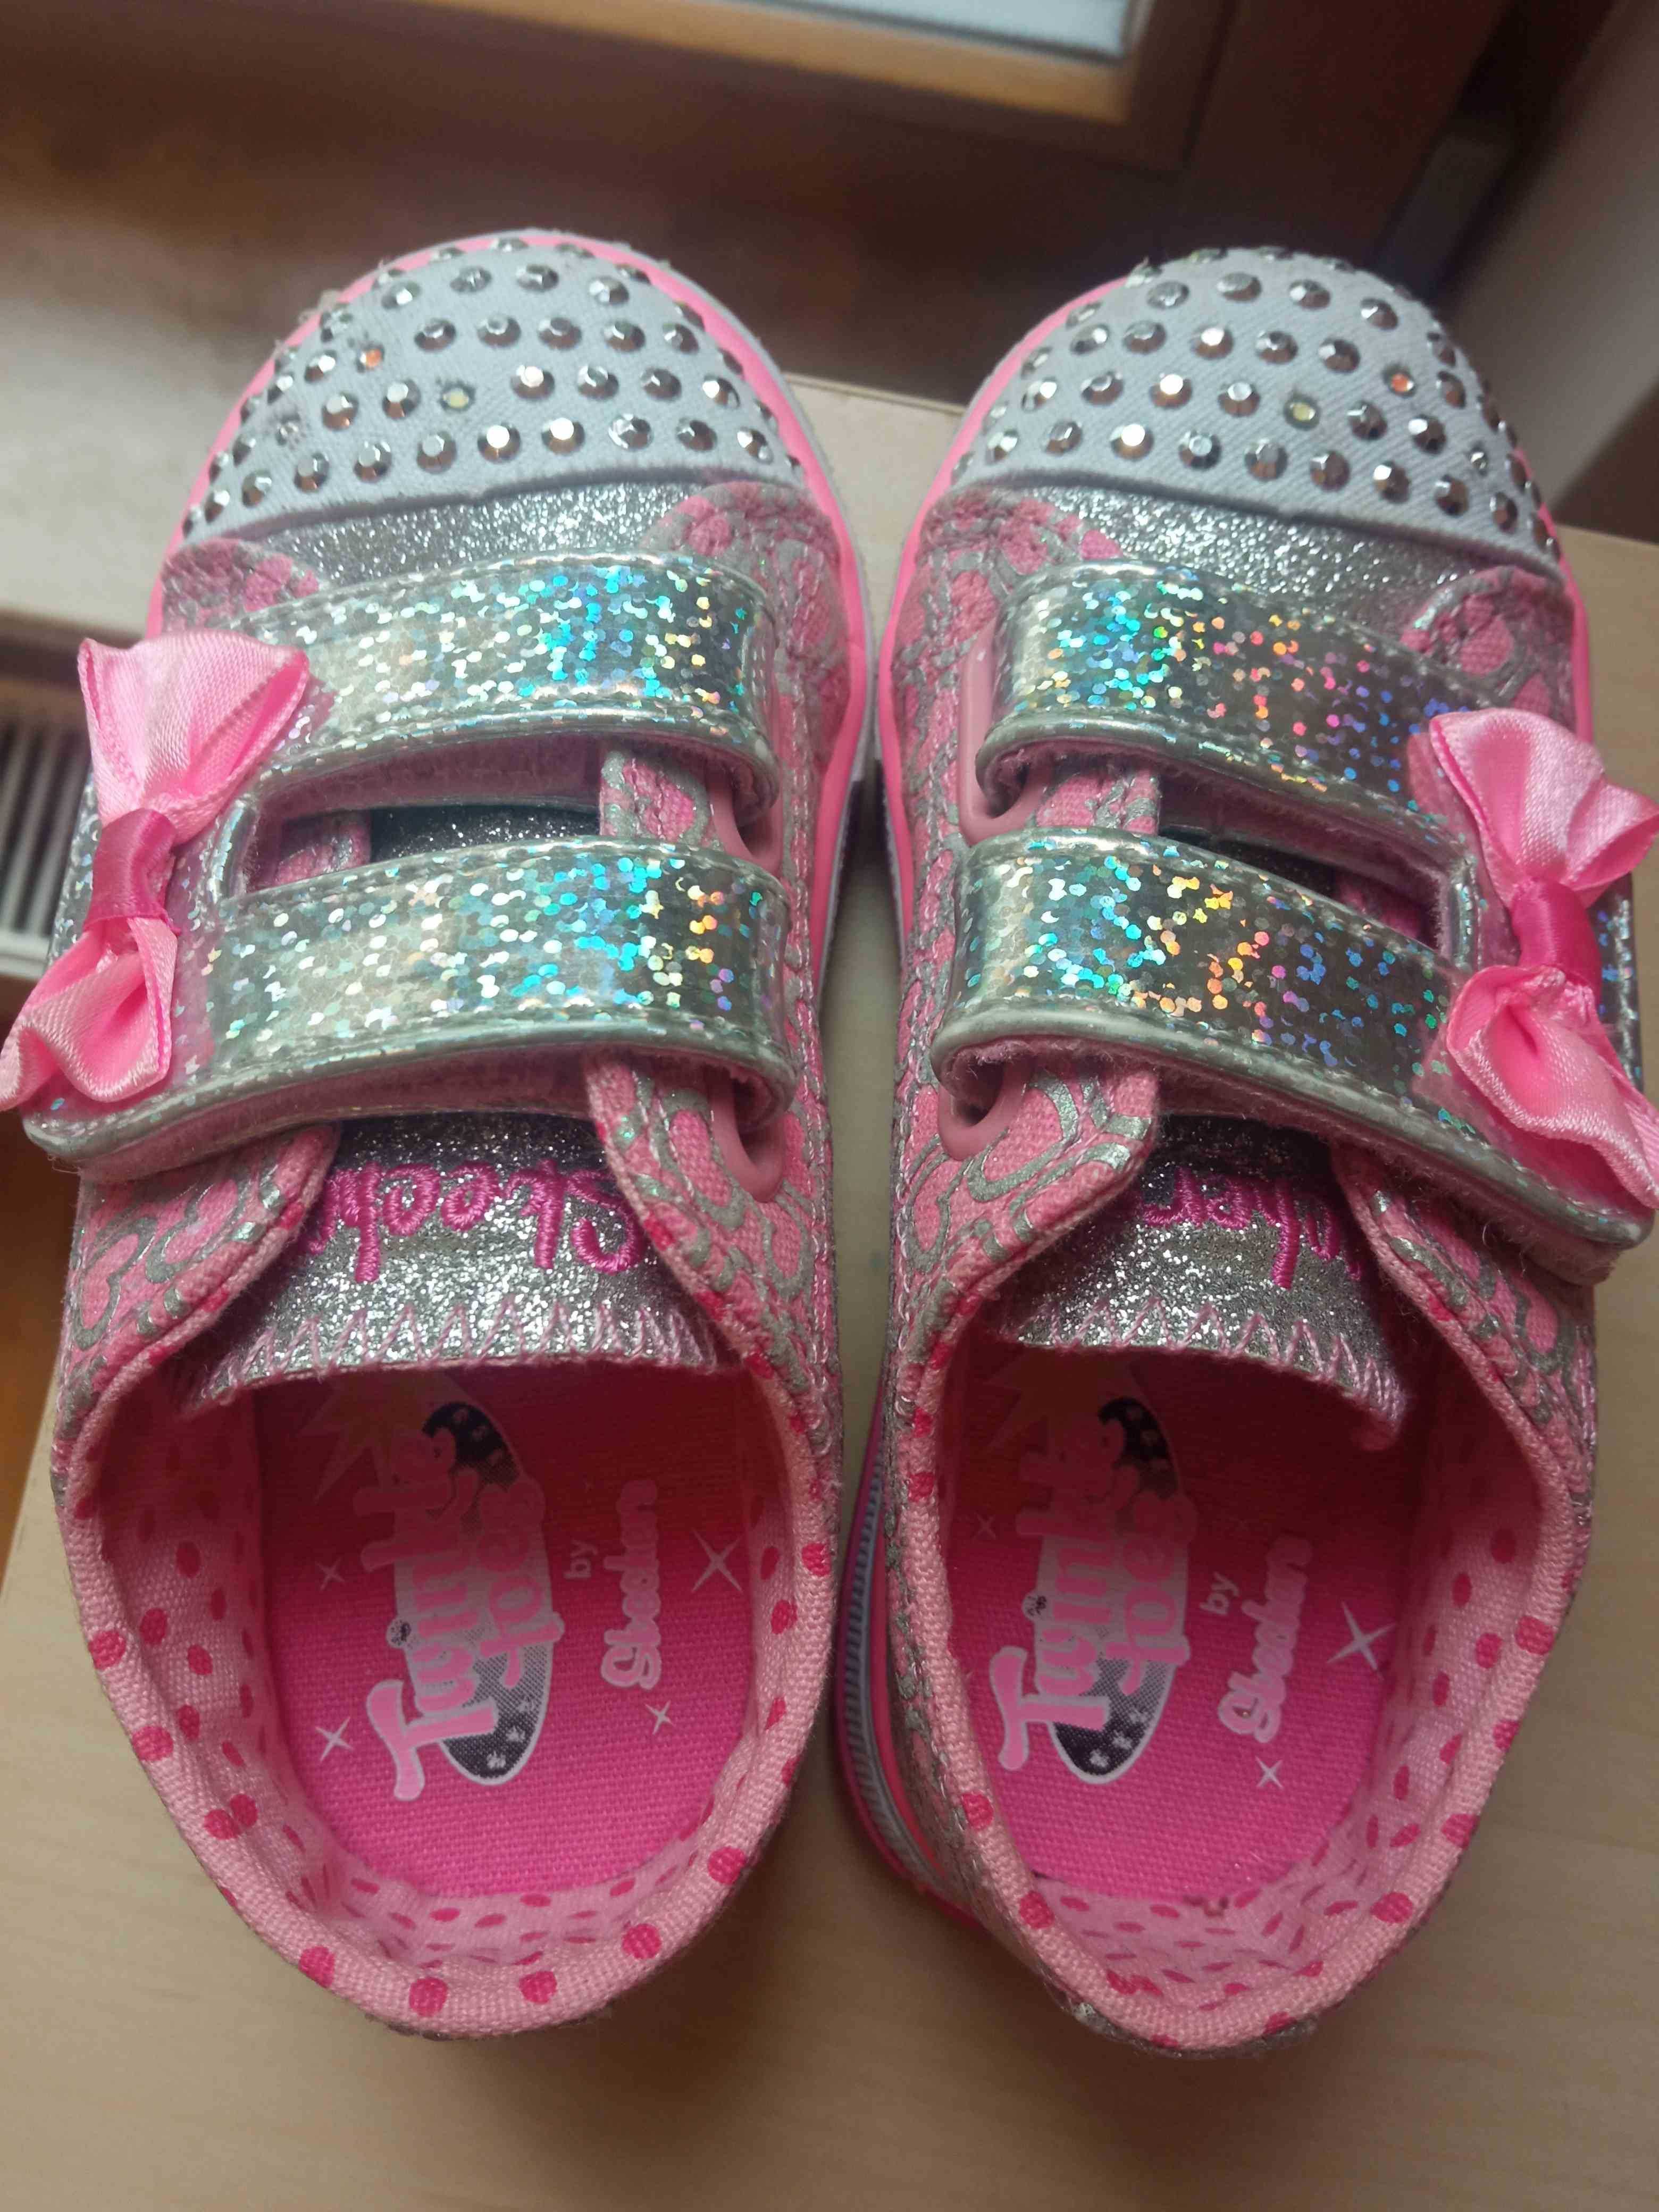 Buty Skechers Twinkle Toes świecące dla dziewczynki - rozmiar 22.5